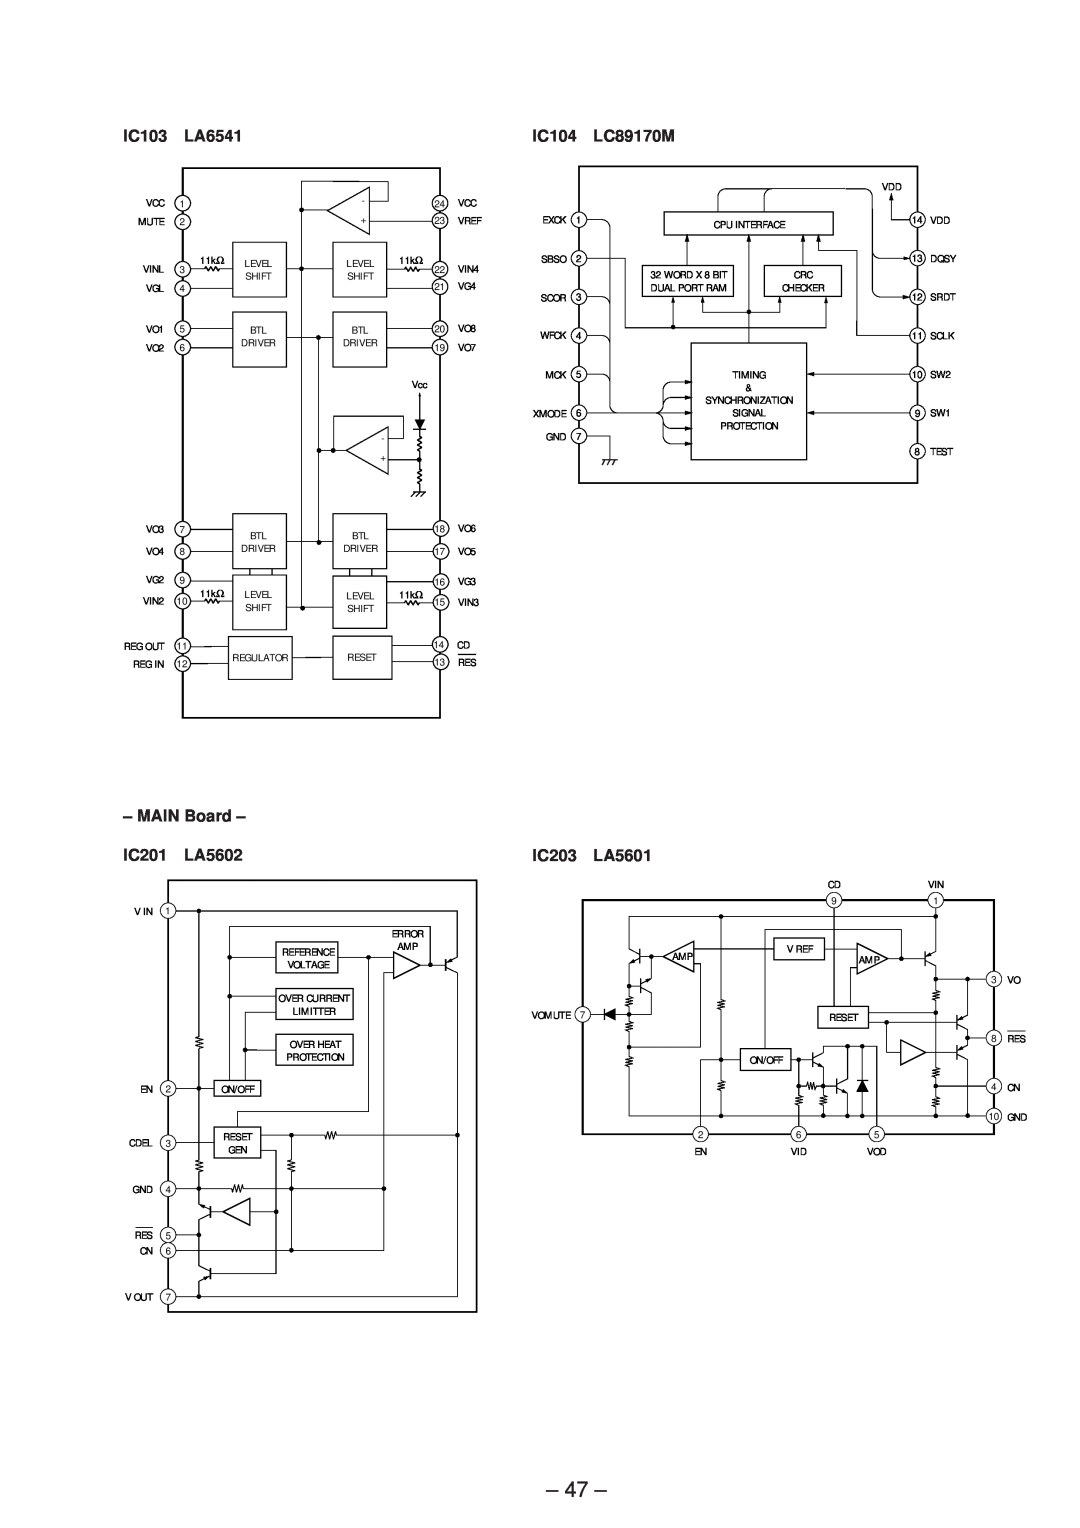 Technicolor - Thomson CDP-CX57 service manual IC103, LA6541, IC104, LC89170M, MAIN Board, IC201, LA5602, IC203, LA5601 